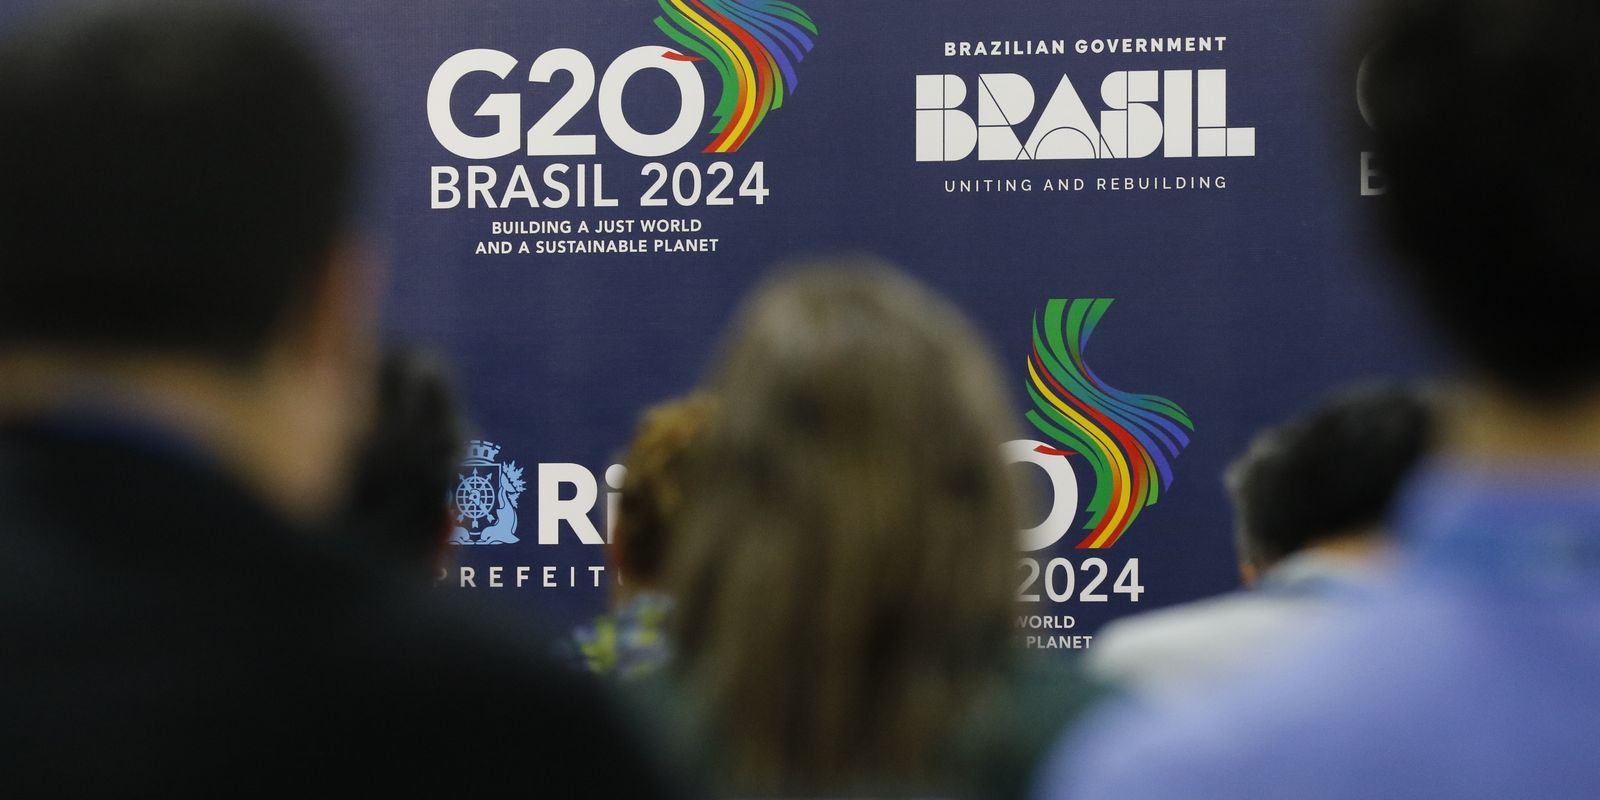 ministros-de-financas-do-g20-se-reunem-em-sao-paulo-nesta-semana